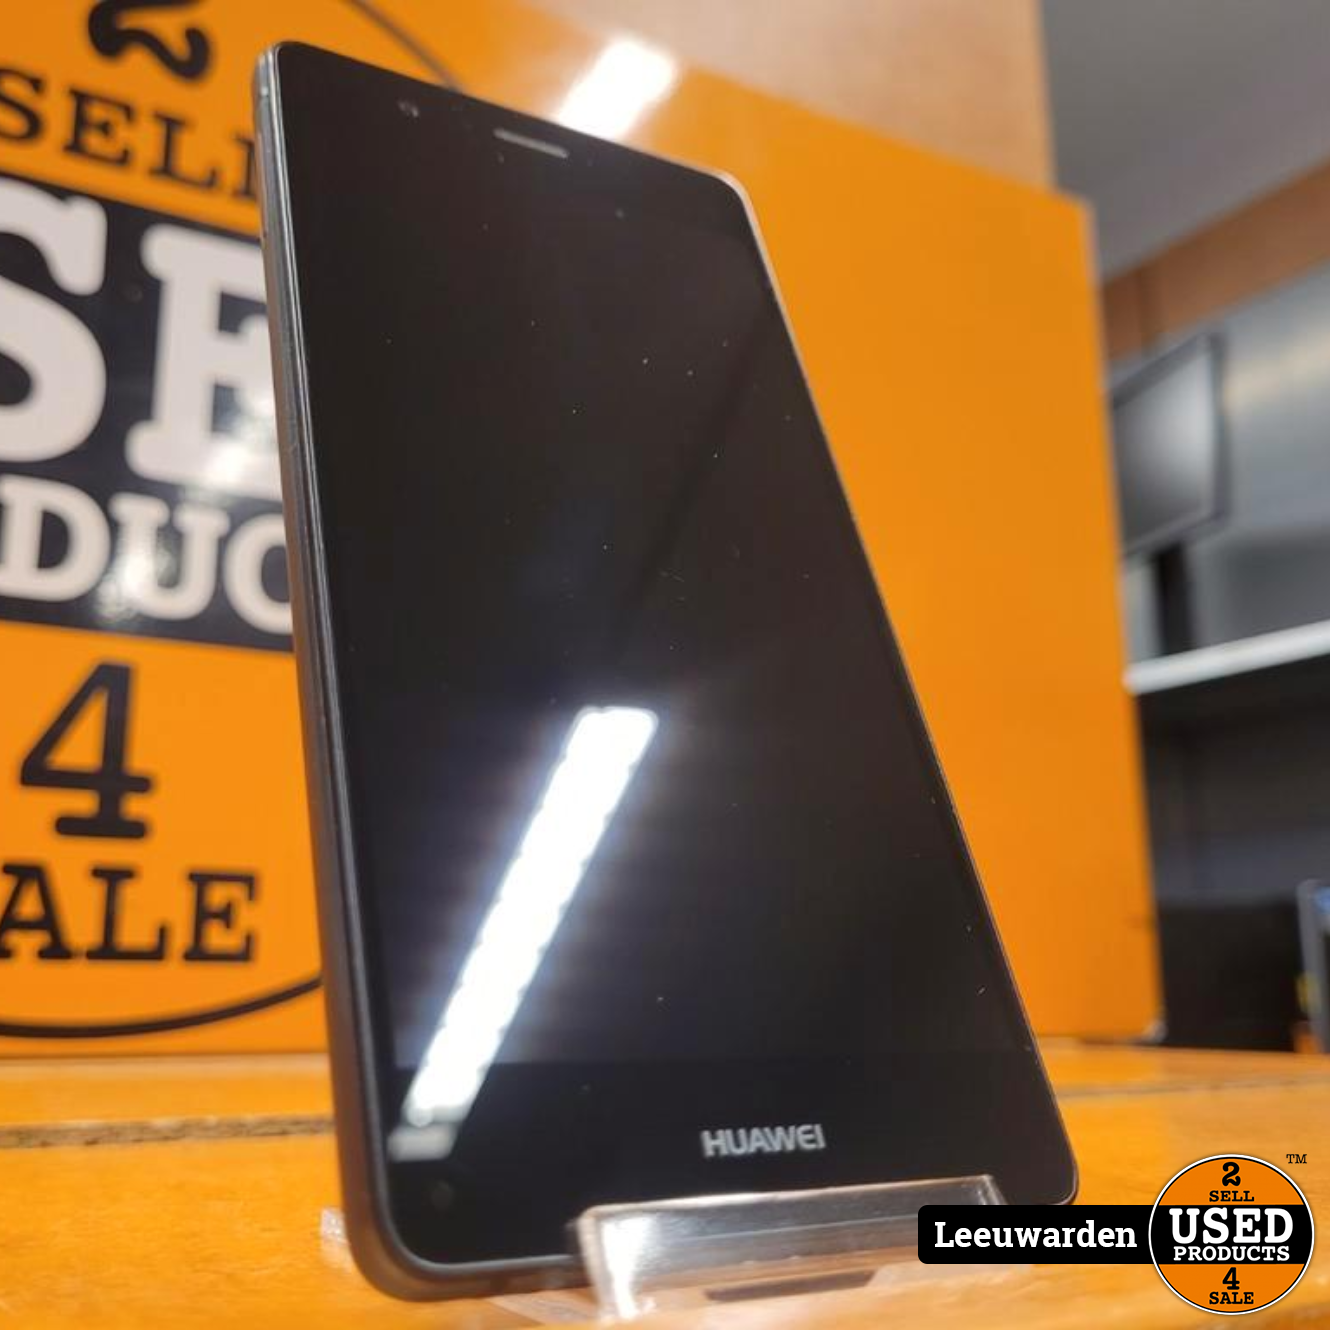 Middeleeuws verslag doen van trog Huawei P9 Lite | 16 GB | Zwart - Used Products Leeuwarden